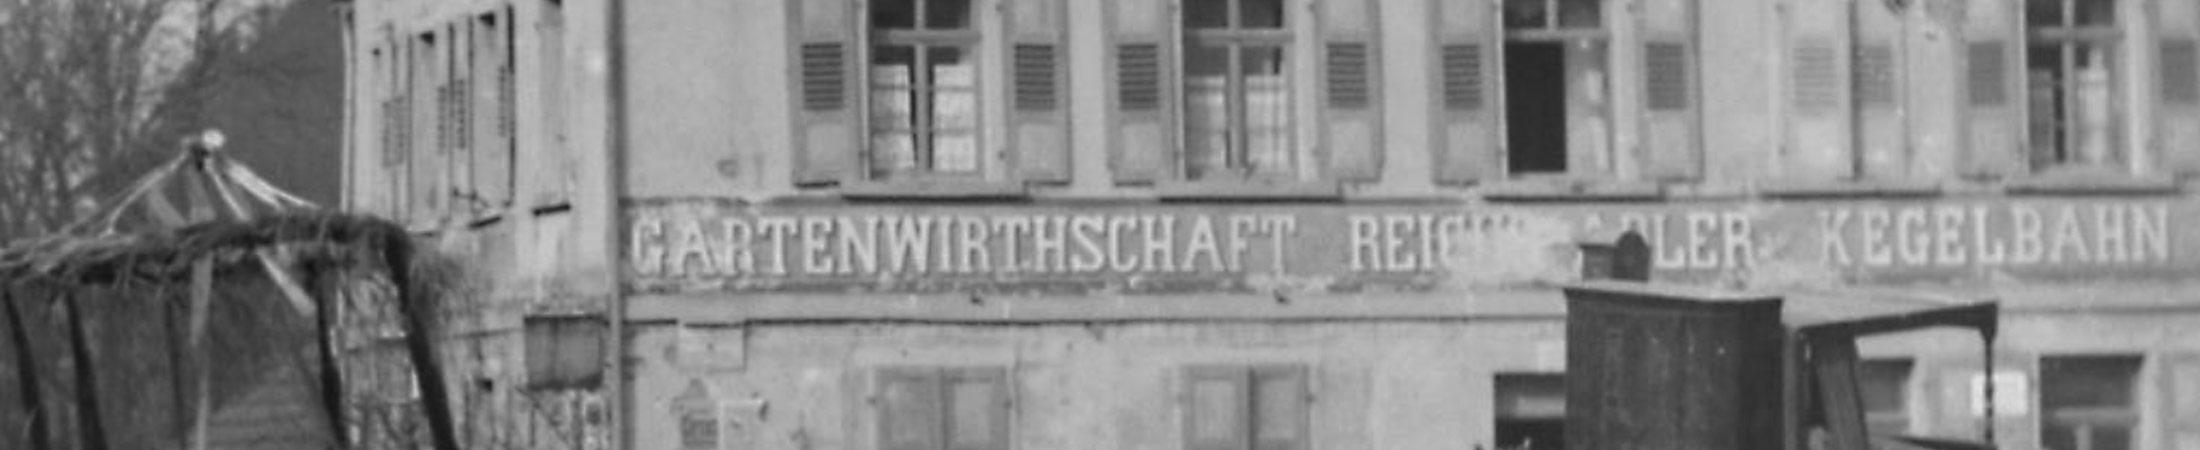 Hotel & Restaurant Reichsadler in Buchen - 111 years Reichsadler